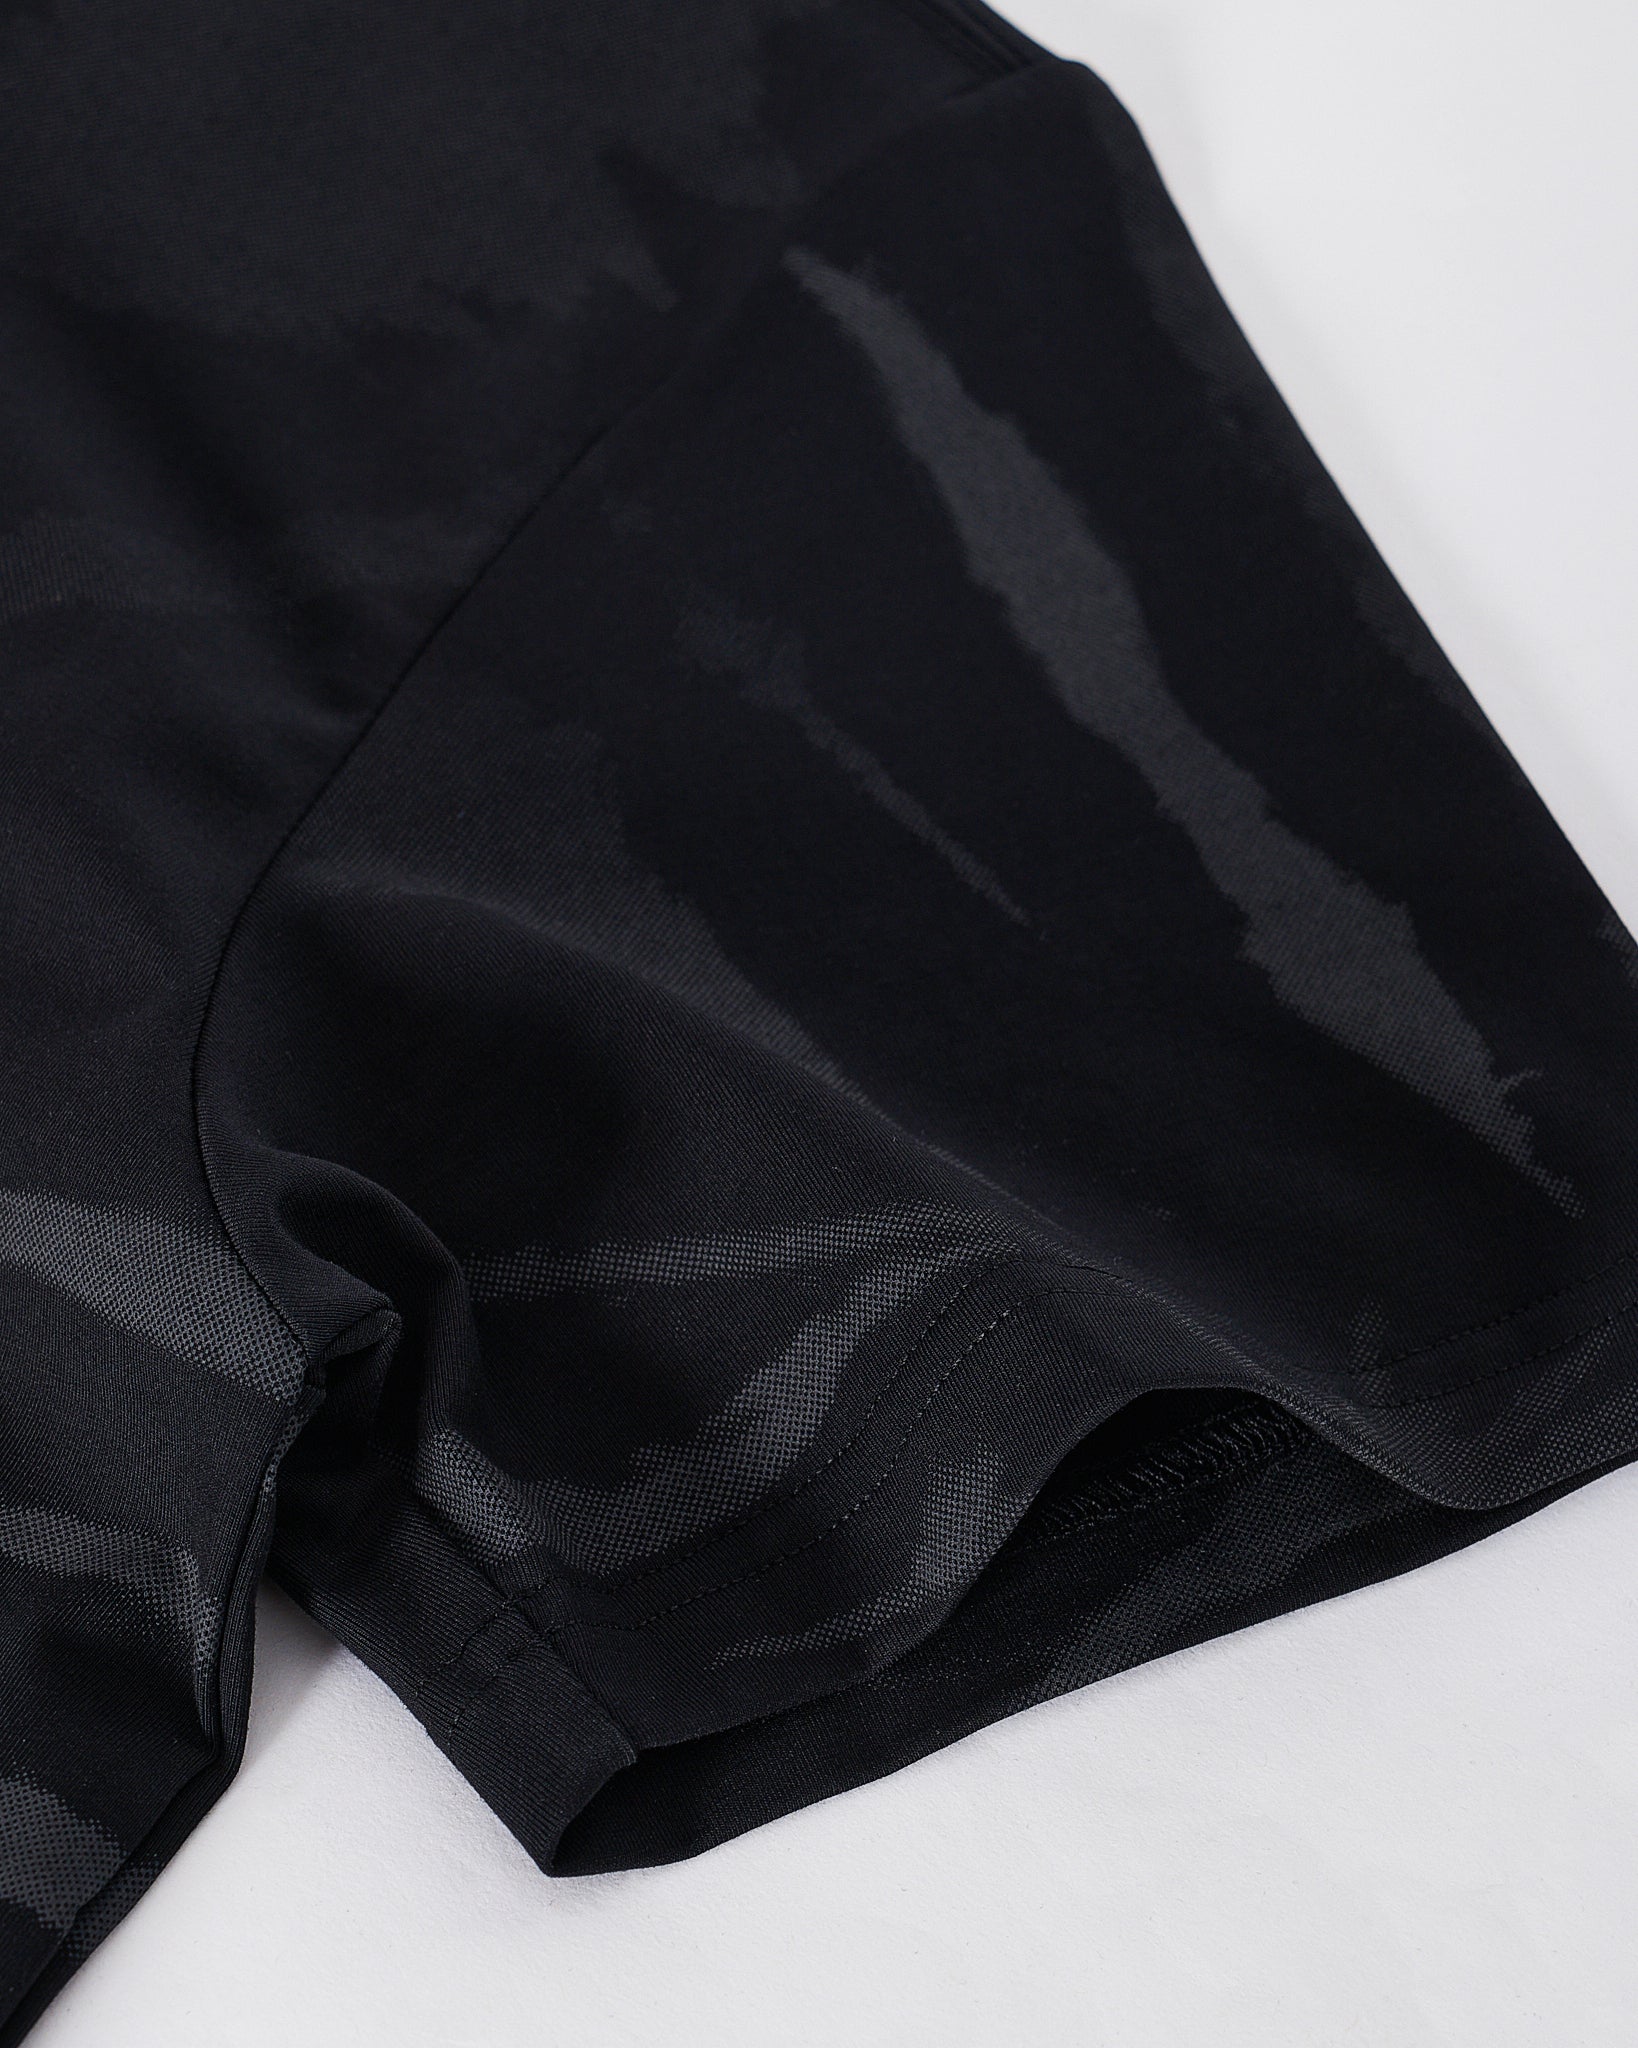 MOI OUTFIT-AD Tie Dye Men Black T-Shirt 15.90